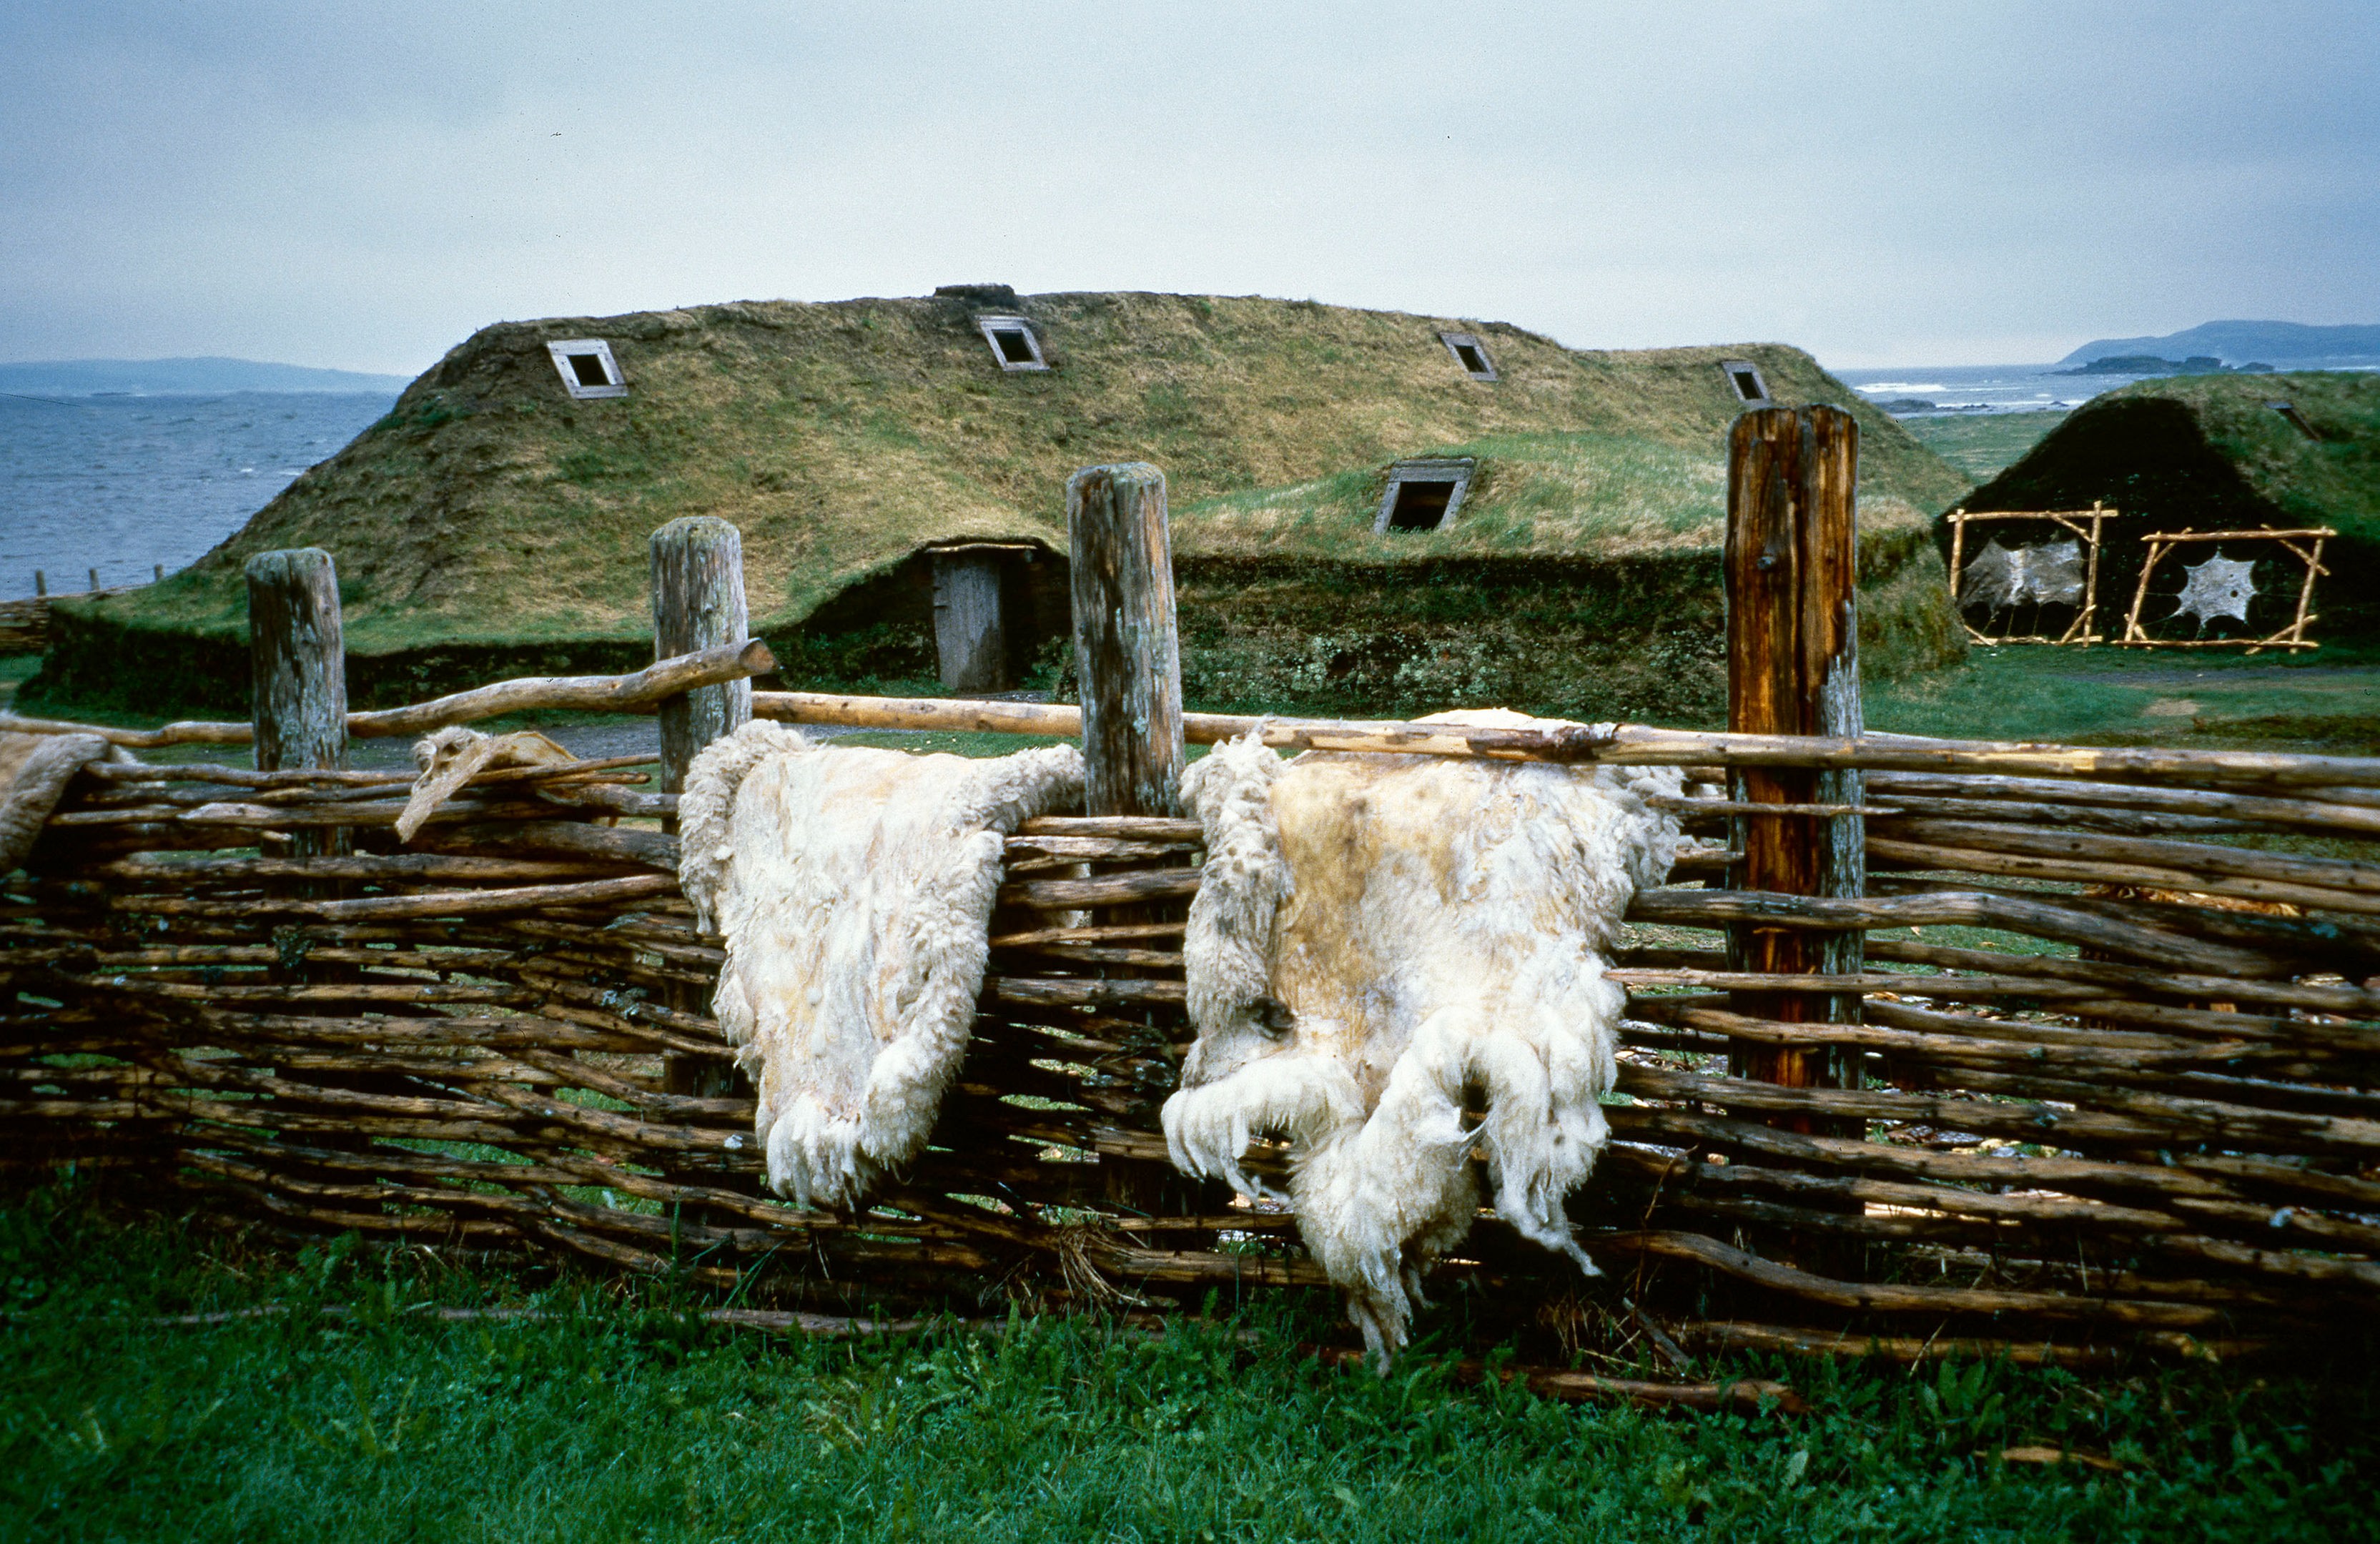 Zwei mit Gras bewachsene Hütten vor der Kulisse des Meeres. Im Vordergrund ein geflochtener Zaun, über dem zwei Felle hängen.